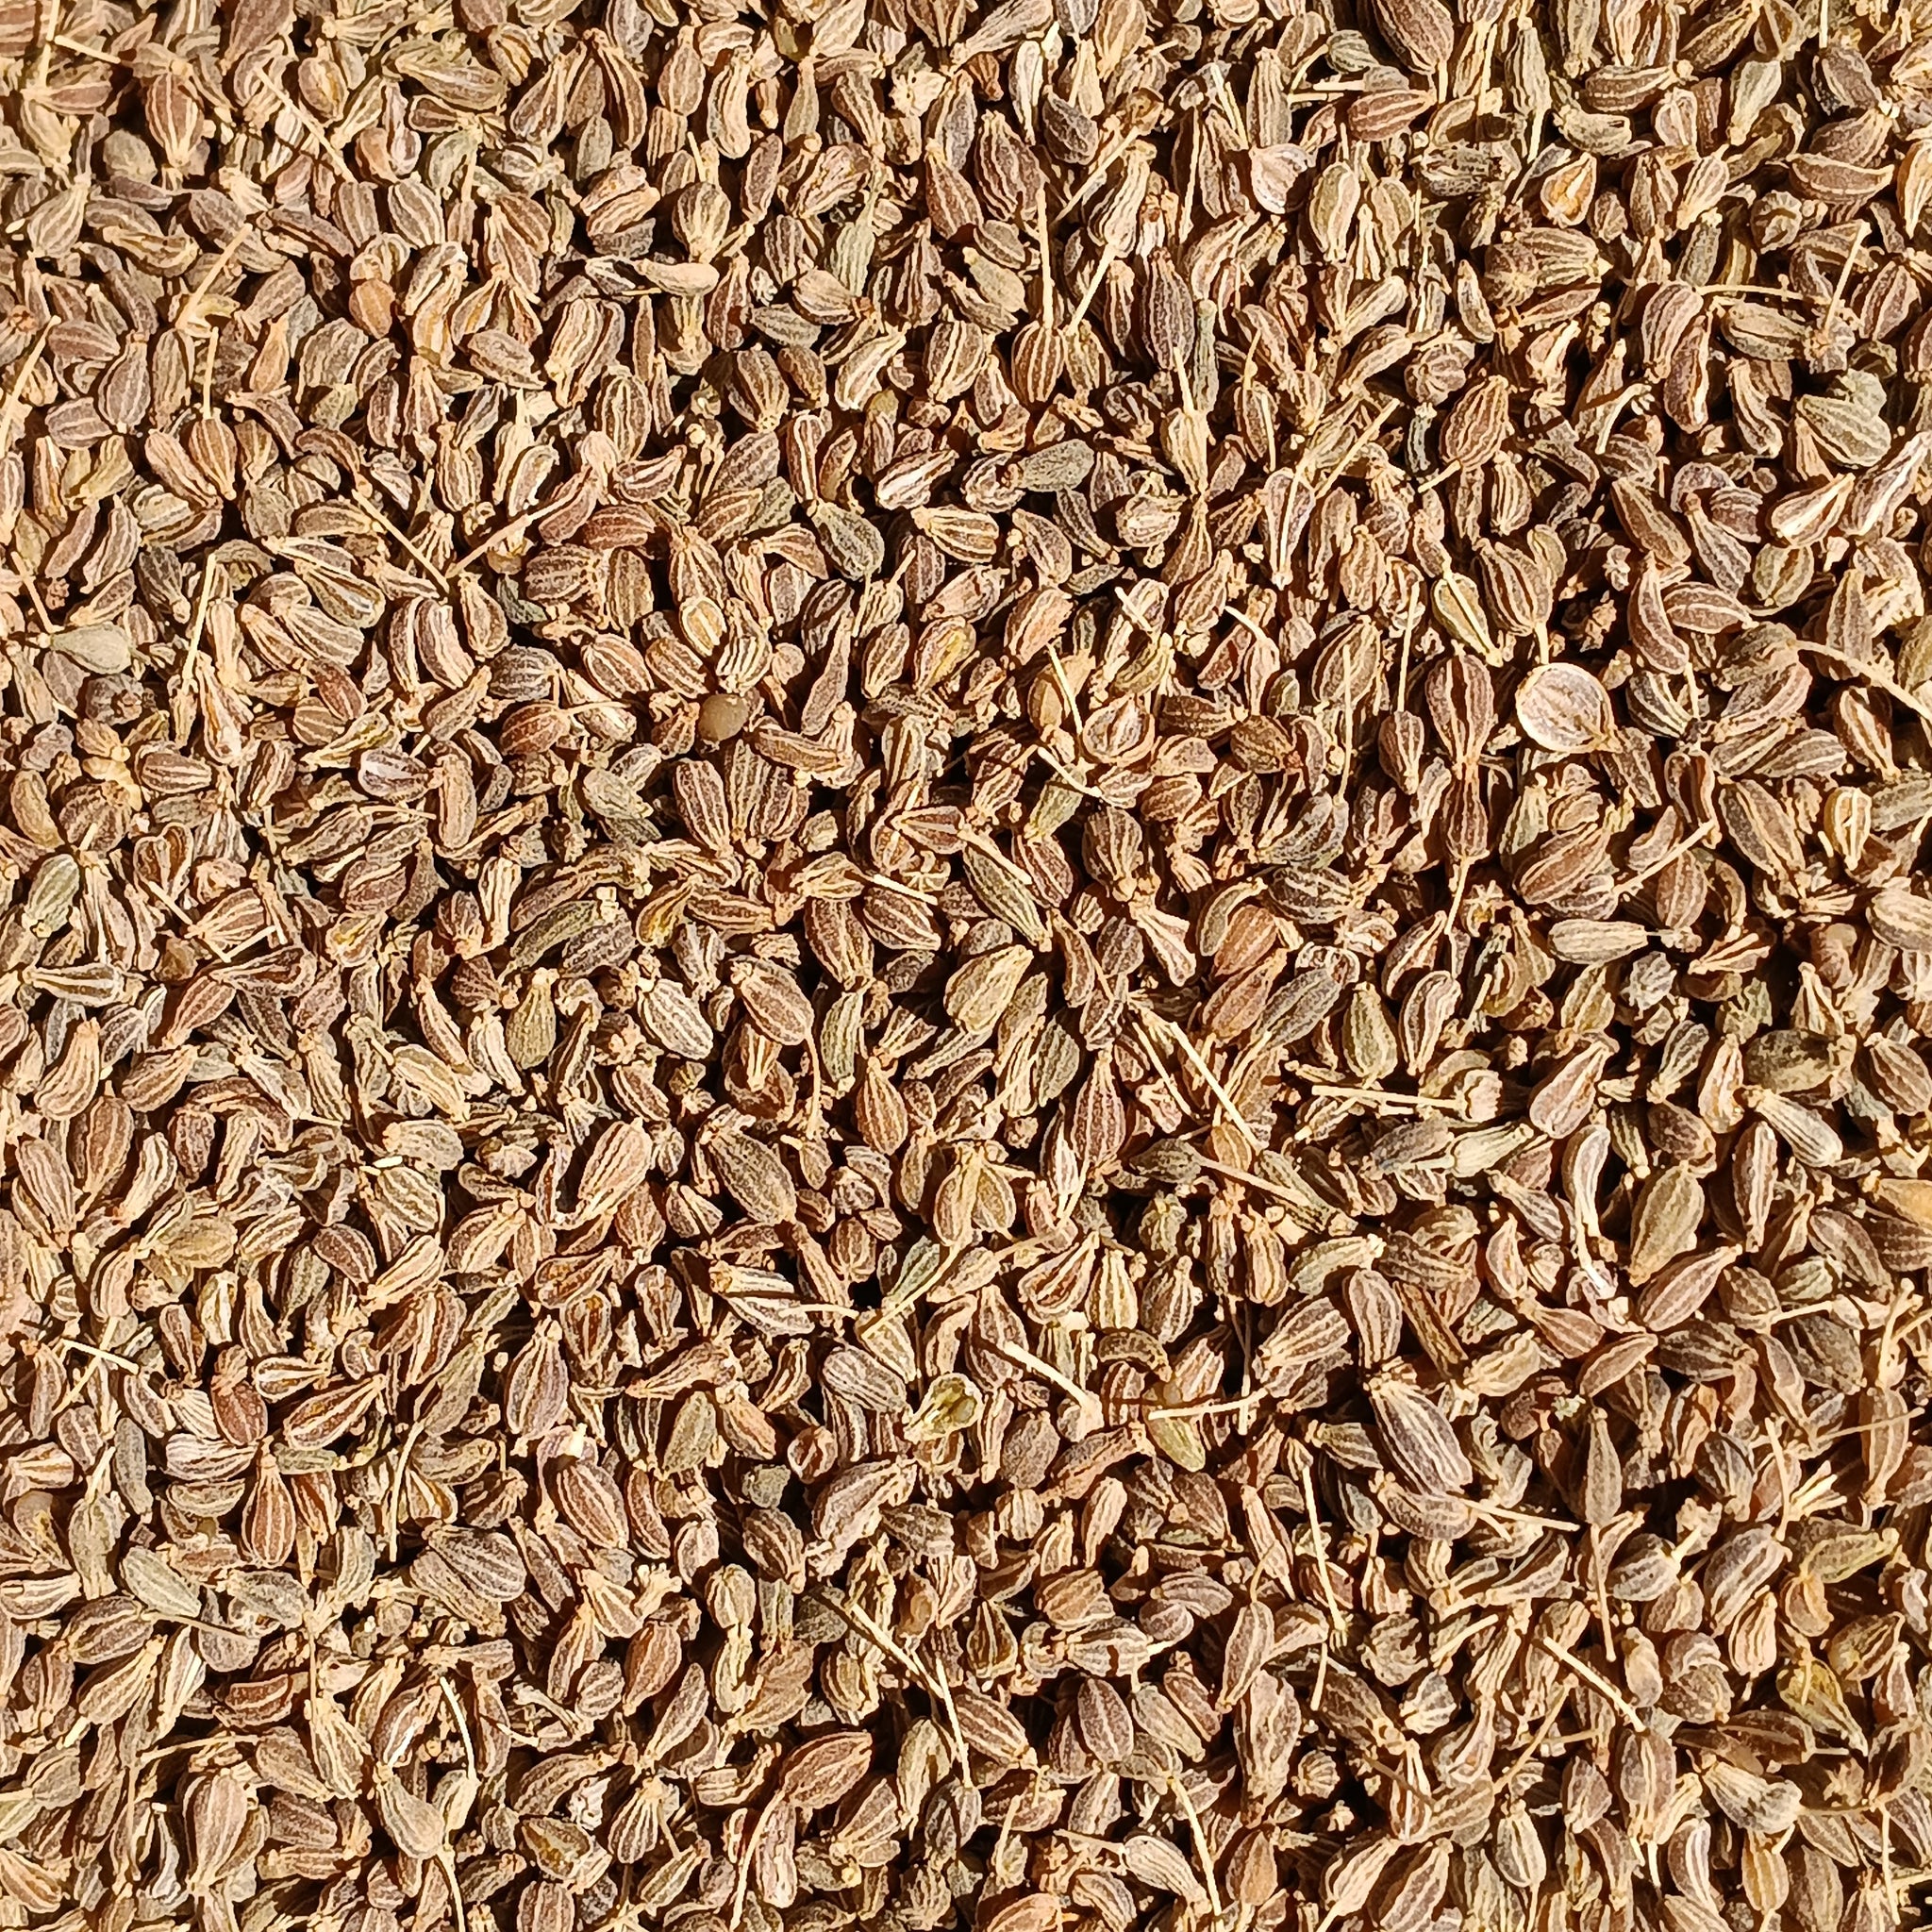 Graines d'anis (Pimpinella Anisum)